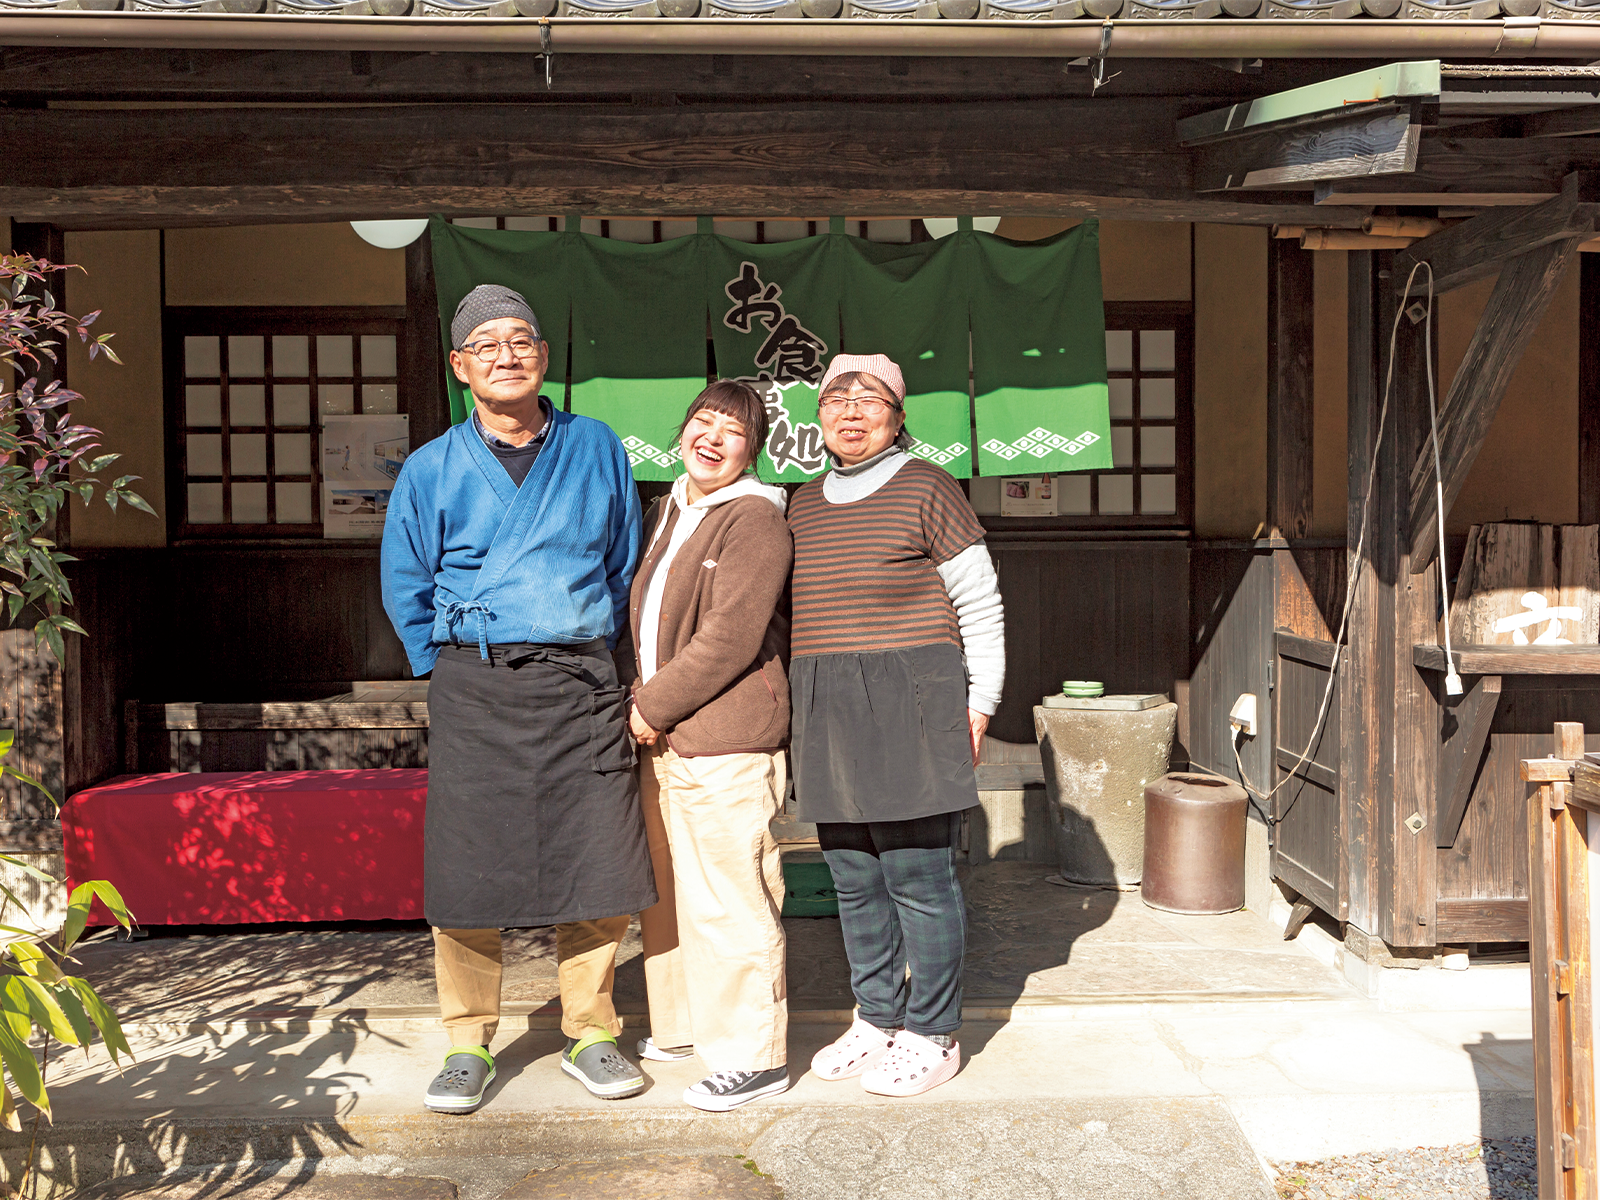 梶原さんおすすめの店のひとつ『辻の茶屋』で。郷土料理のだご汁が絶品。常田文利さんと由美さんが切り盛りする。